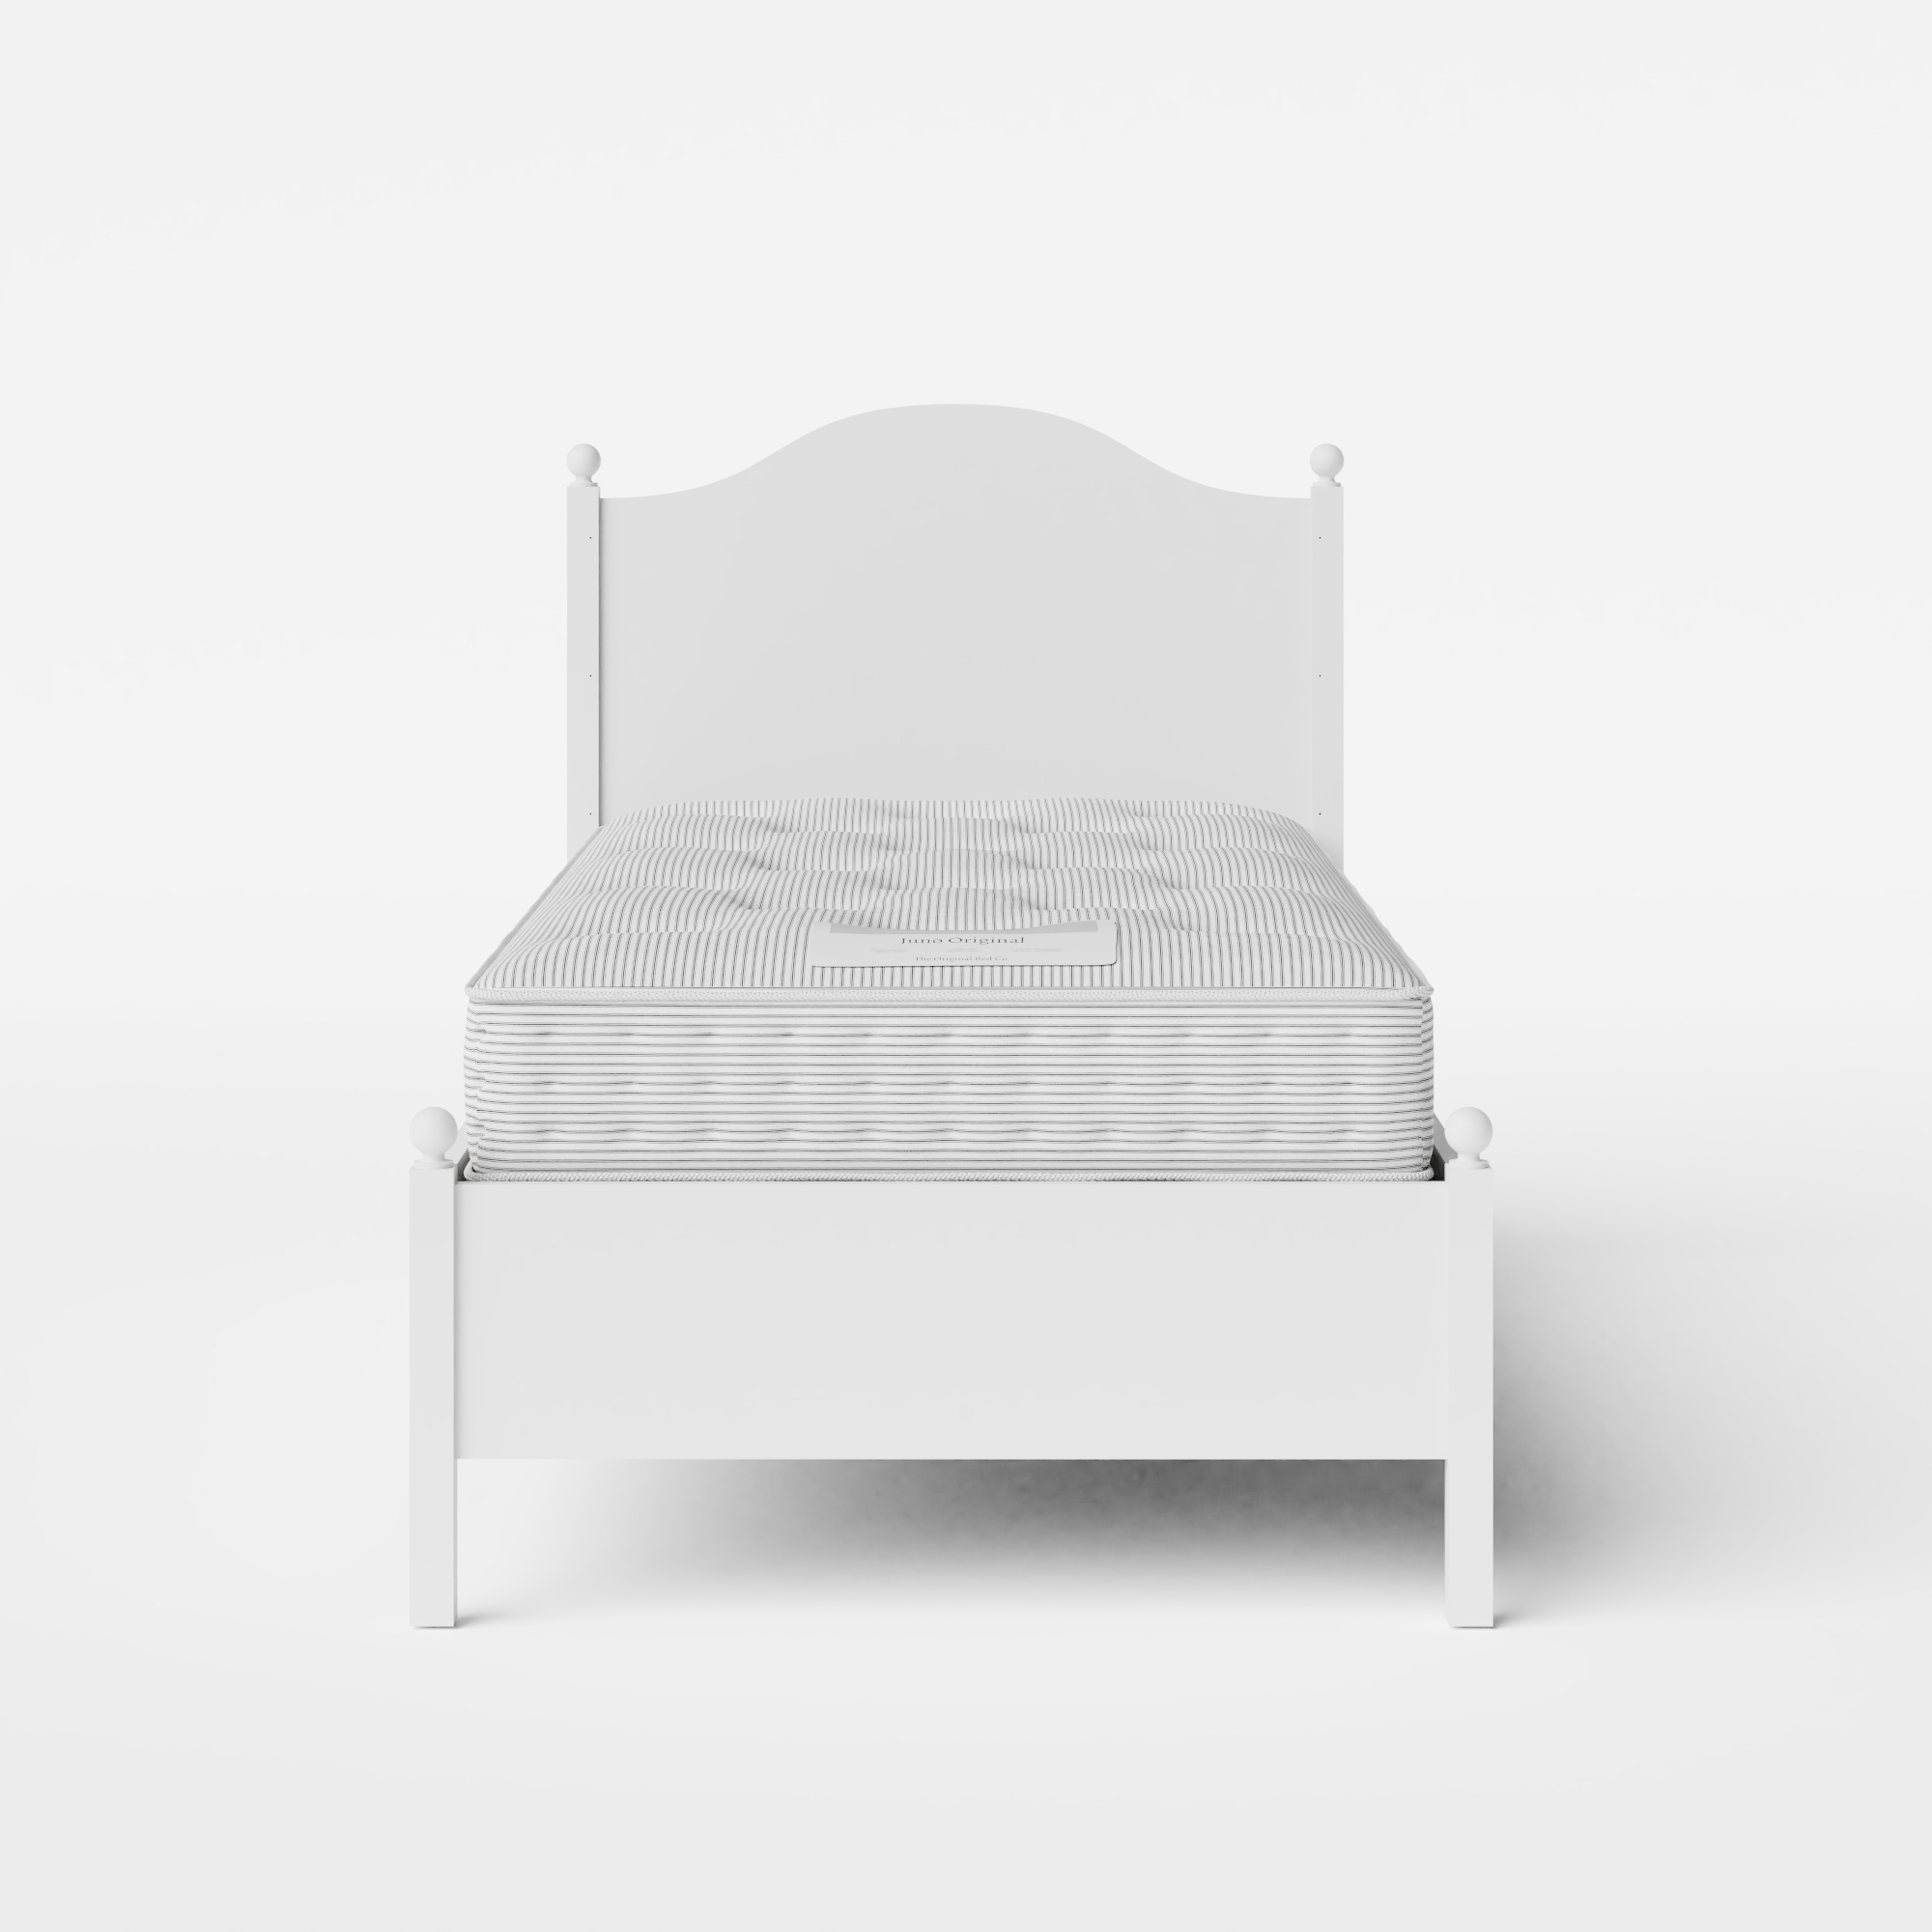 Brady Painted letto singolo in legno bianco con materasso